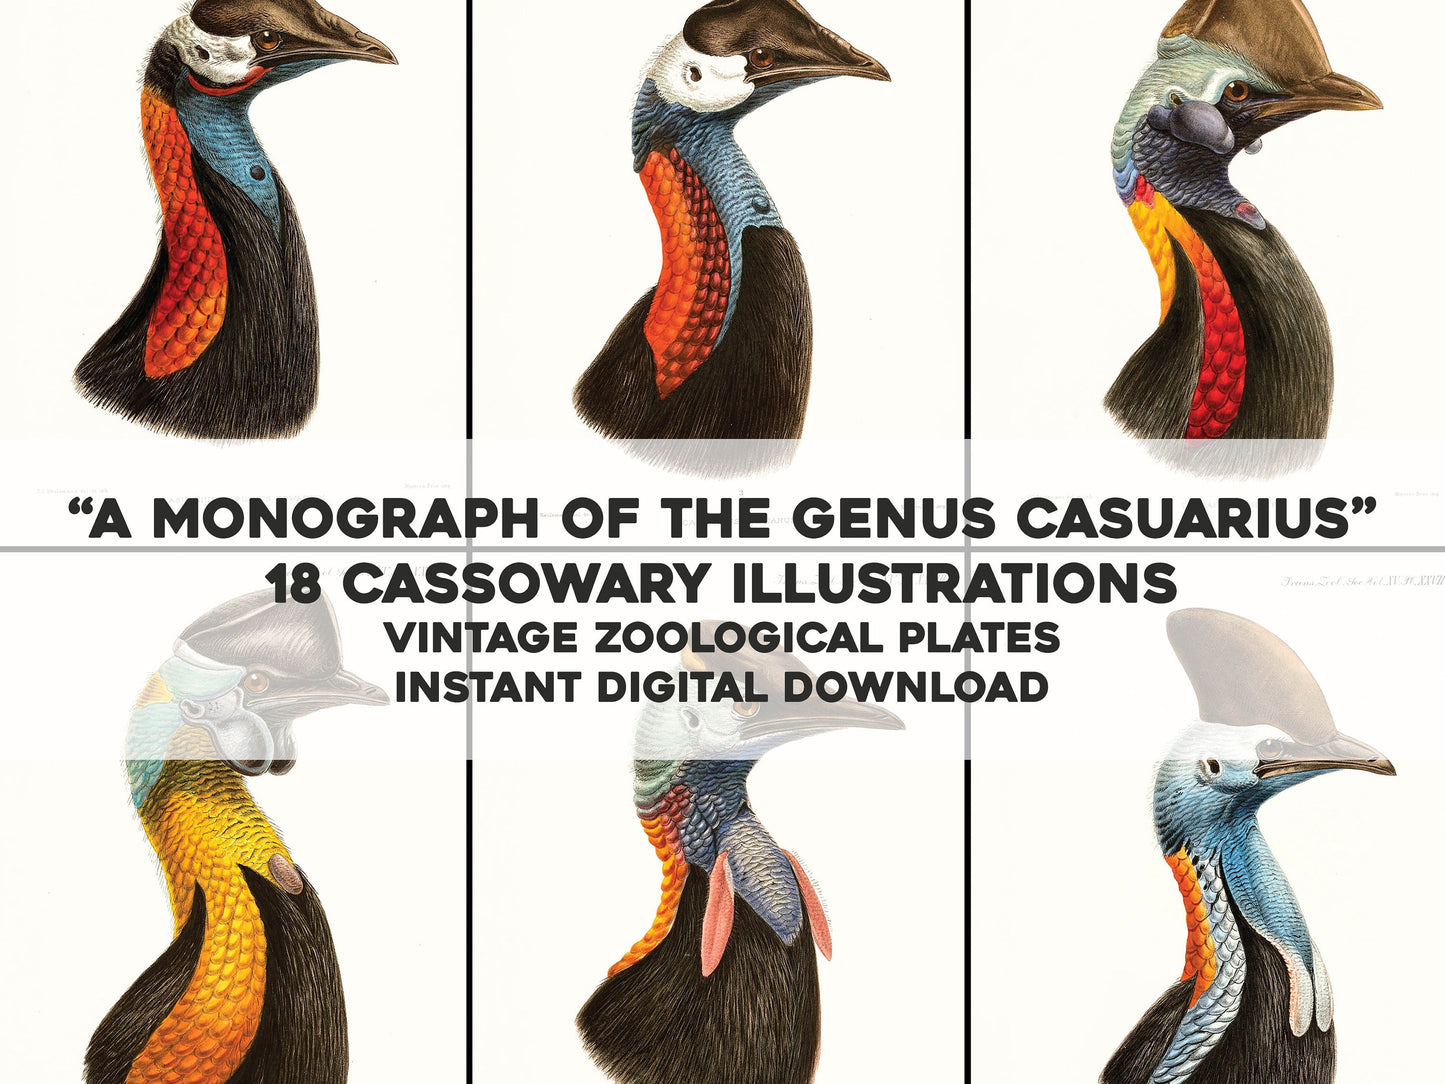 A Monograph of the Genus Casuarius Cassowaries [18 Images]